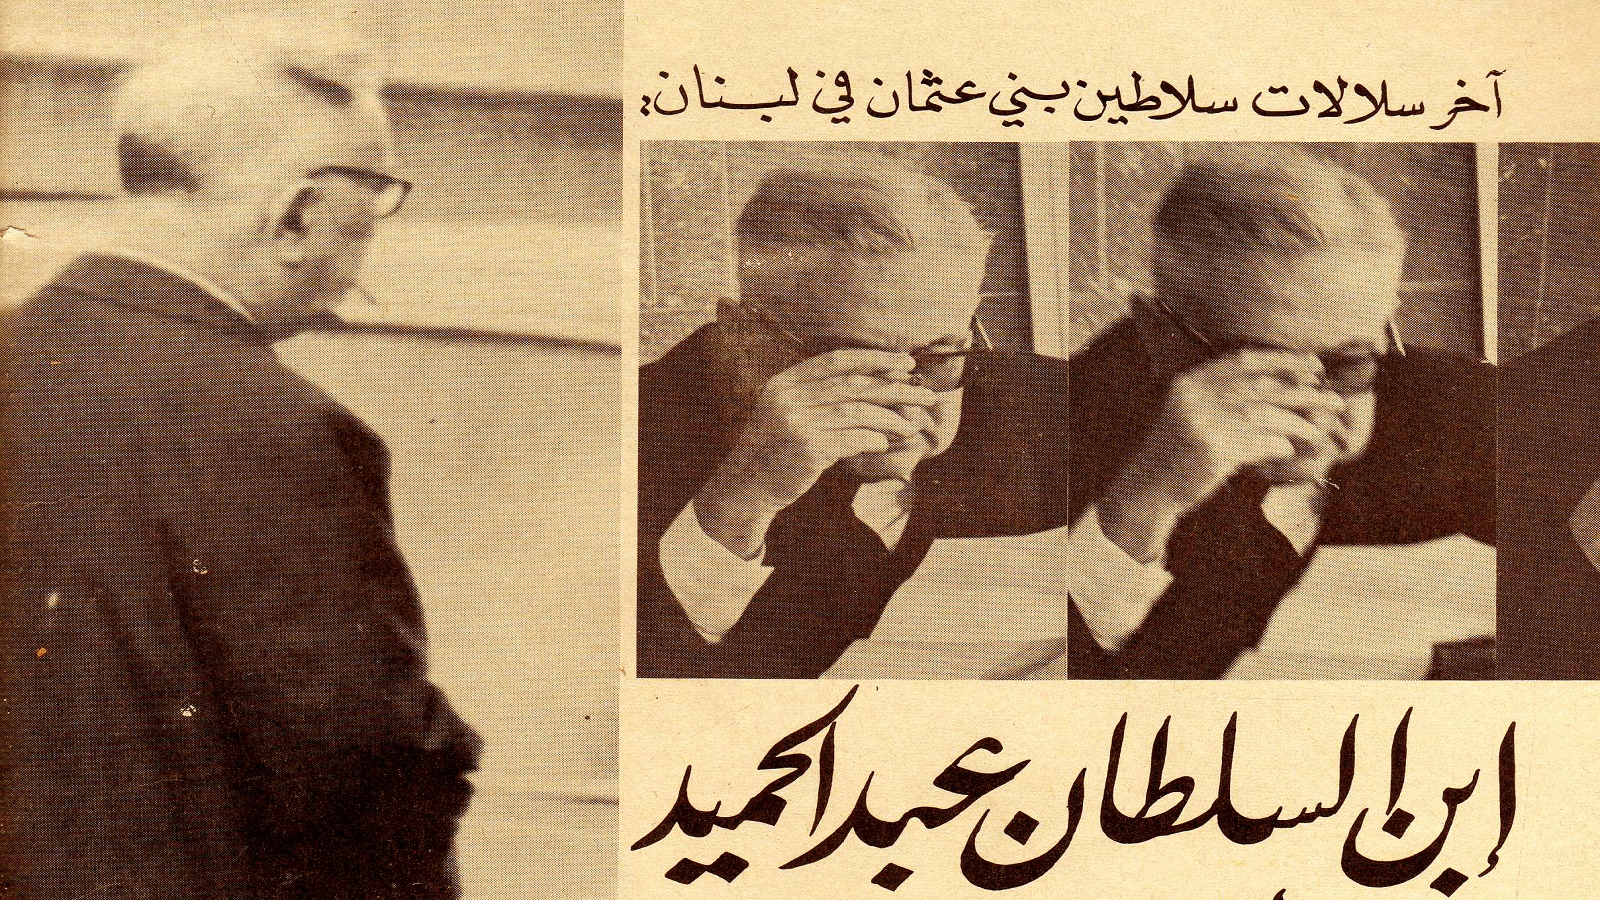 الأمير عابد في بيروت، 1969.